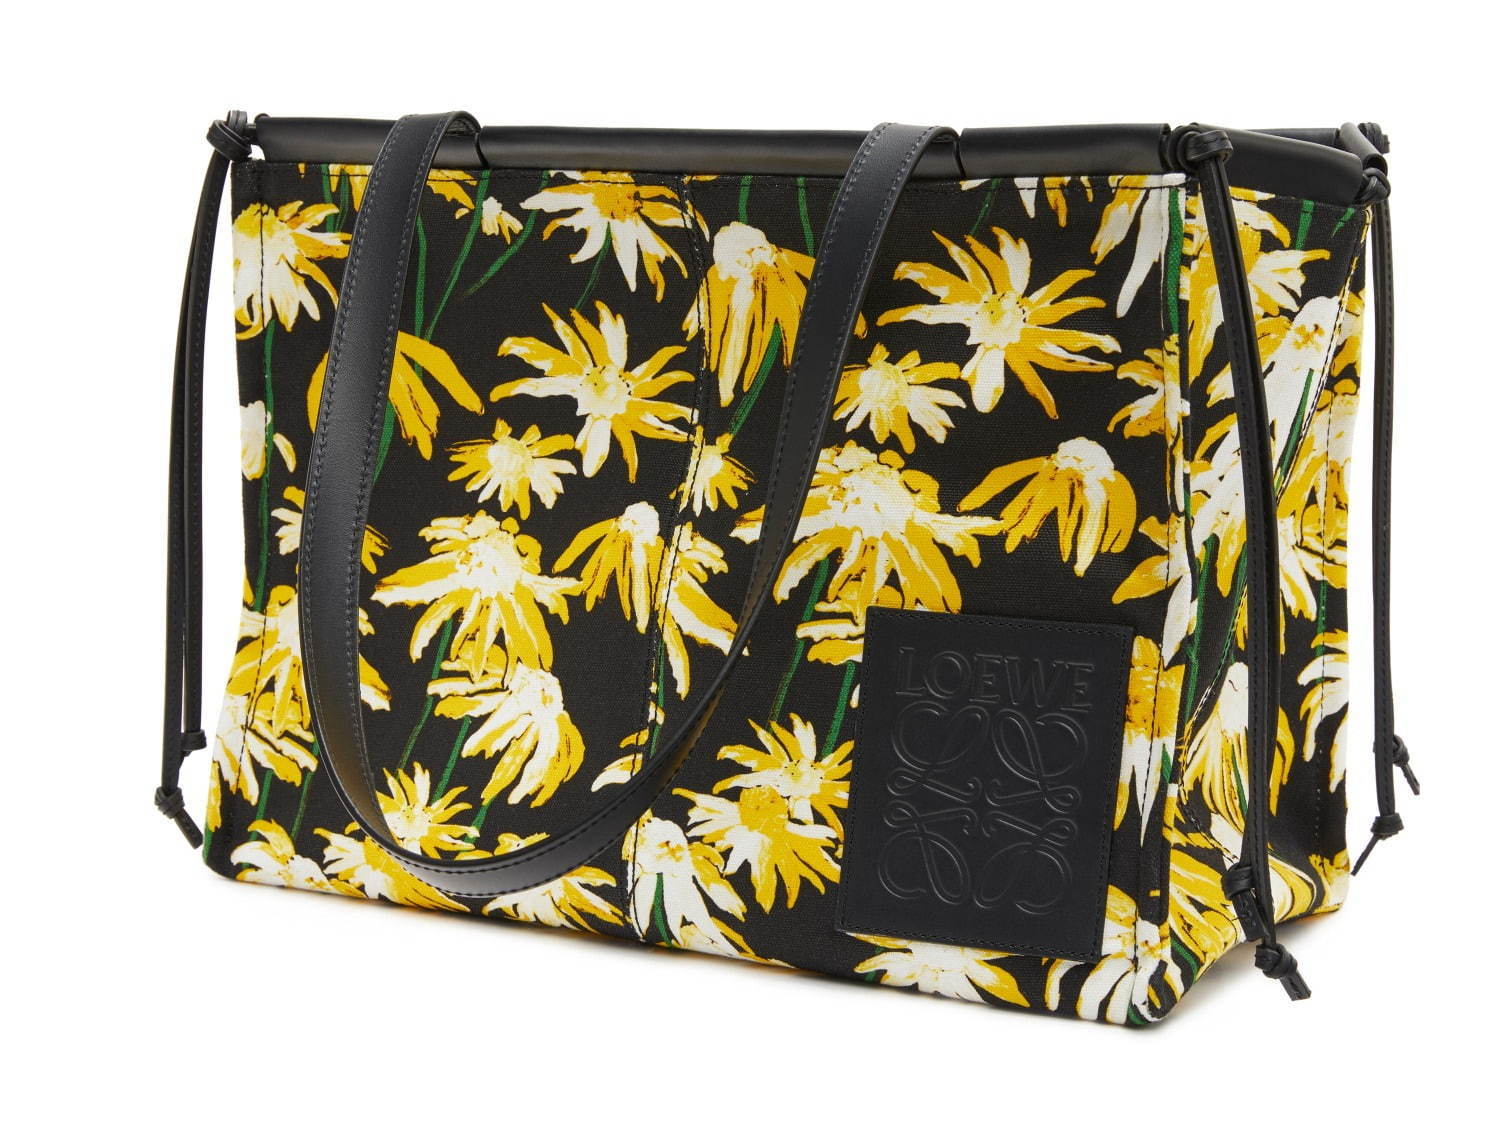 ロエベの人気バッグ「クッショントート」がスモールサイズに、花柄